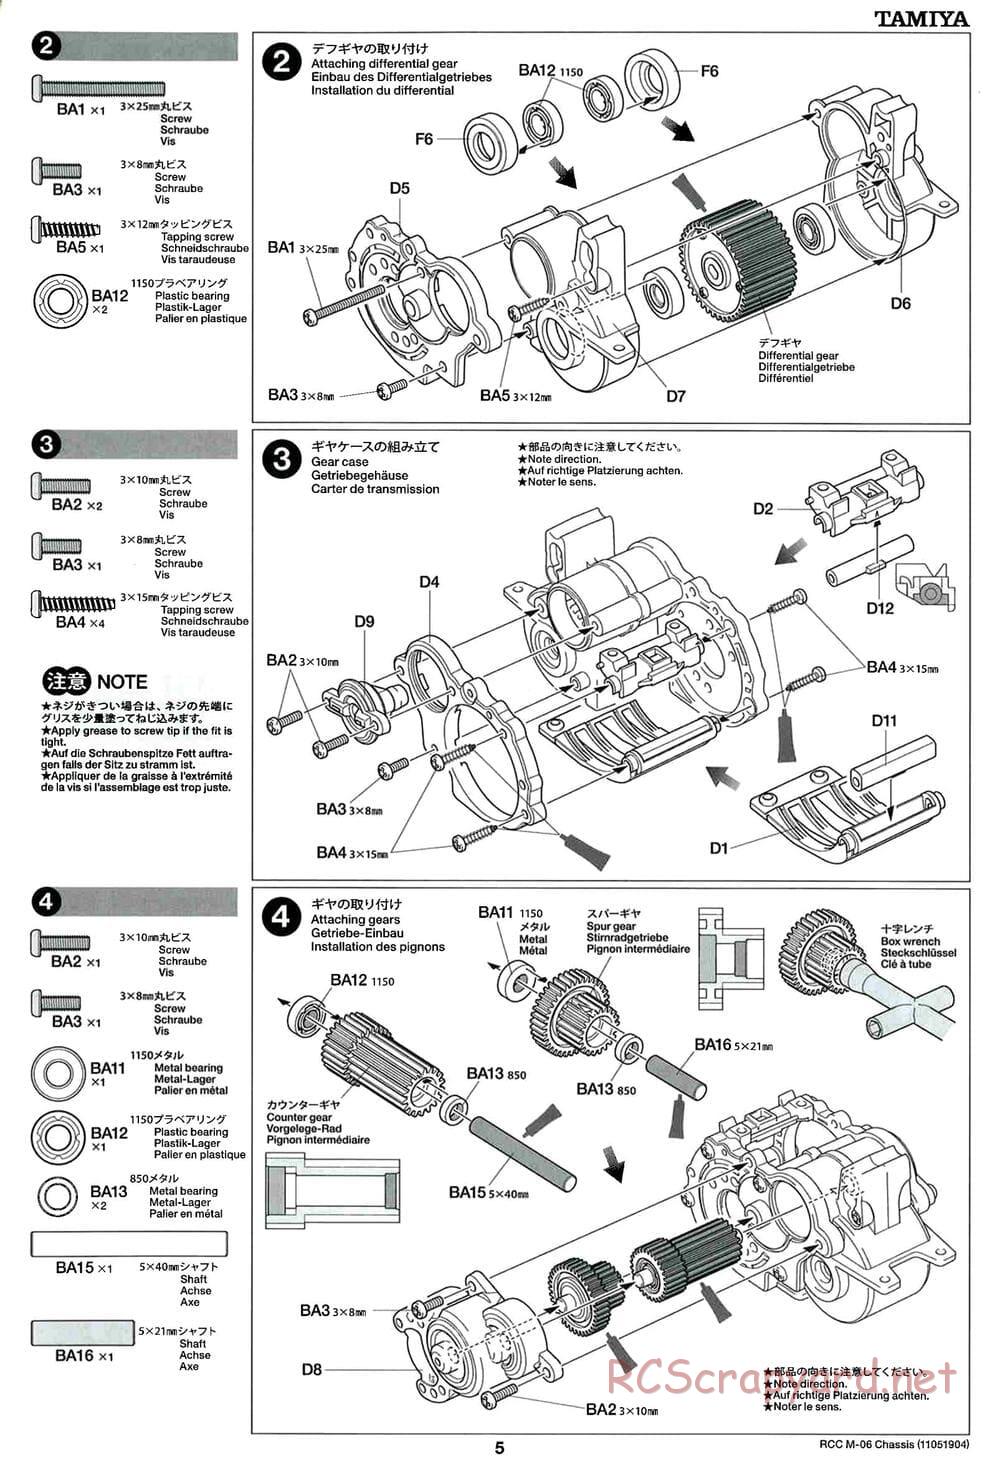 Tamiya - M-06 Chassis - Manual - Page 5